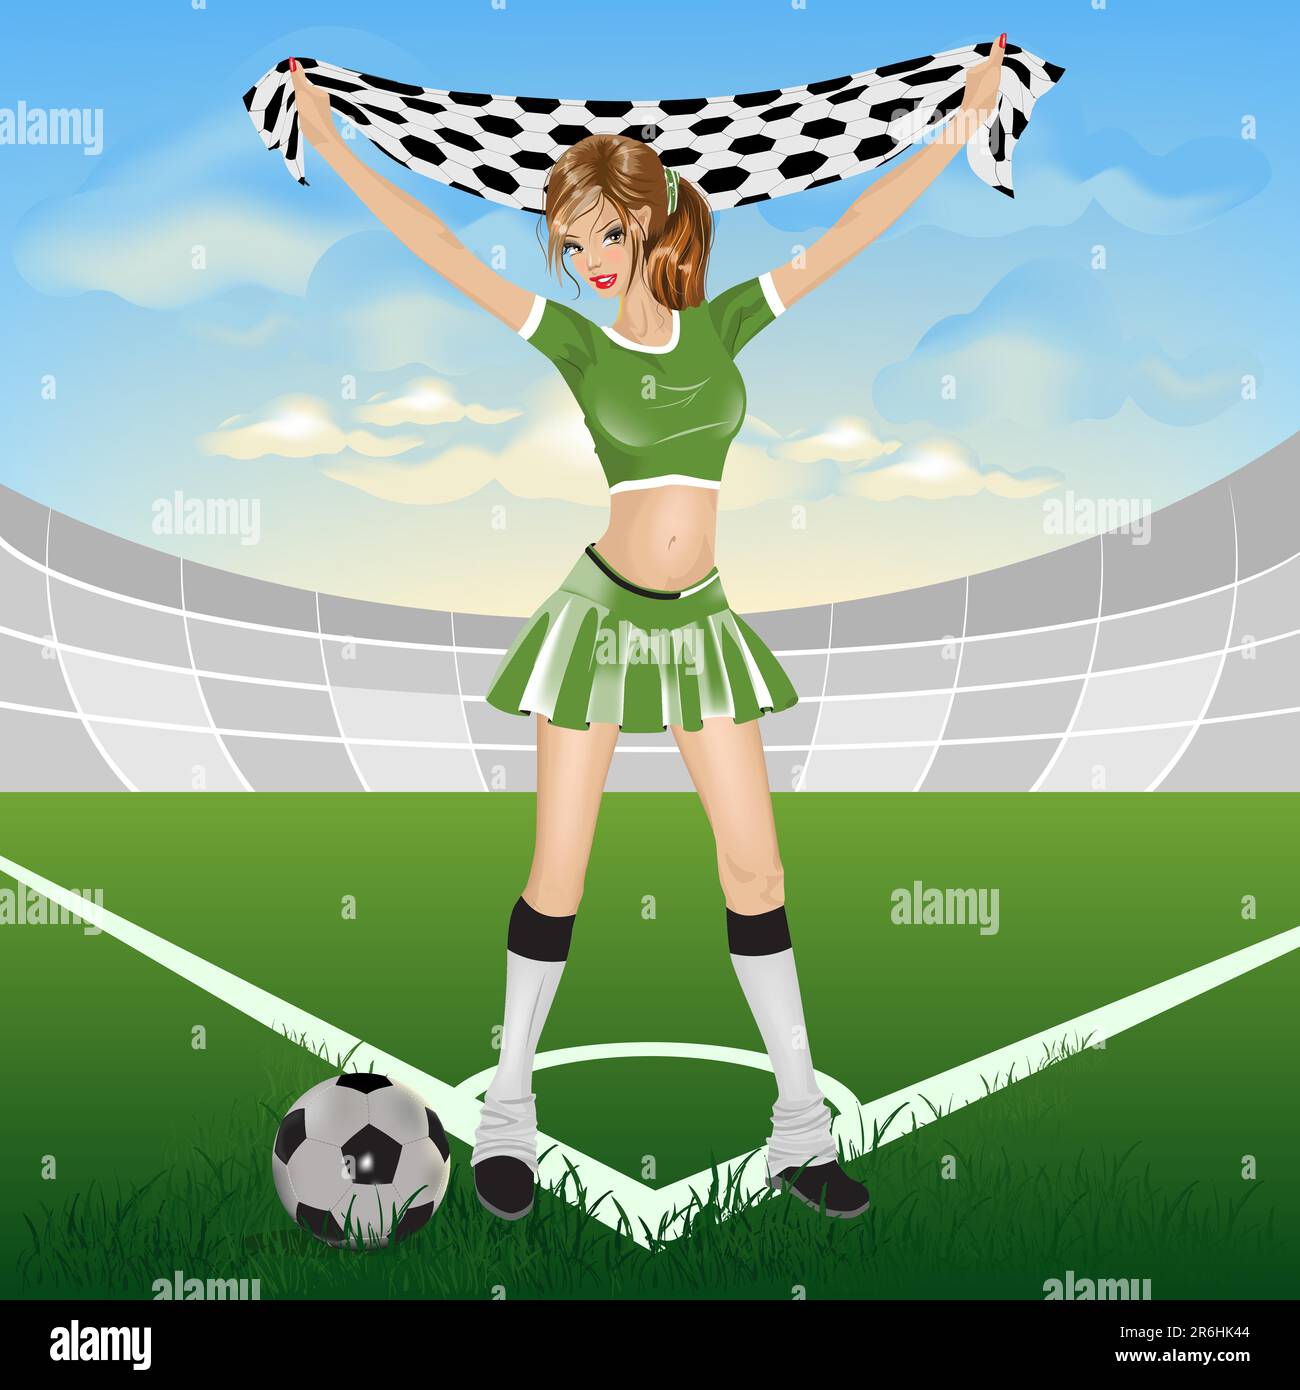 Girl soccer fan. Illustration in vector format Stock Vector